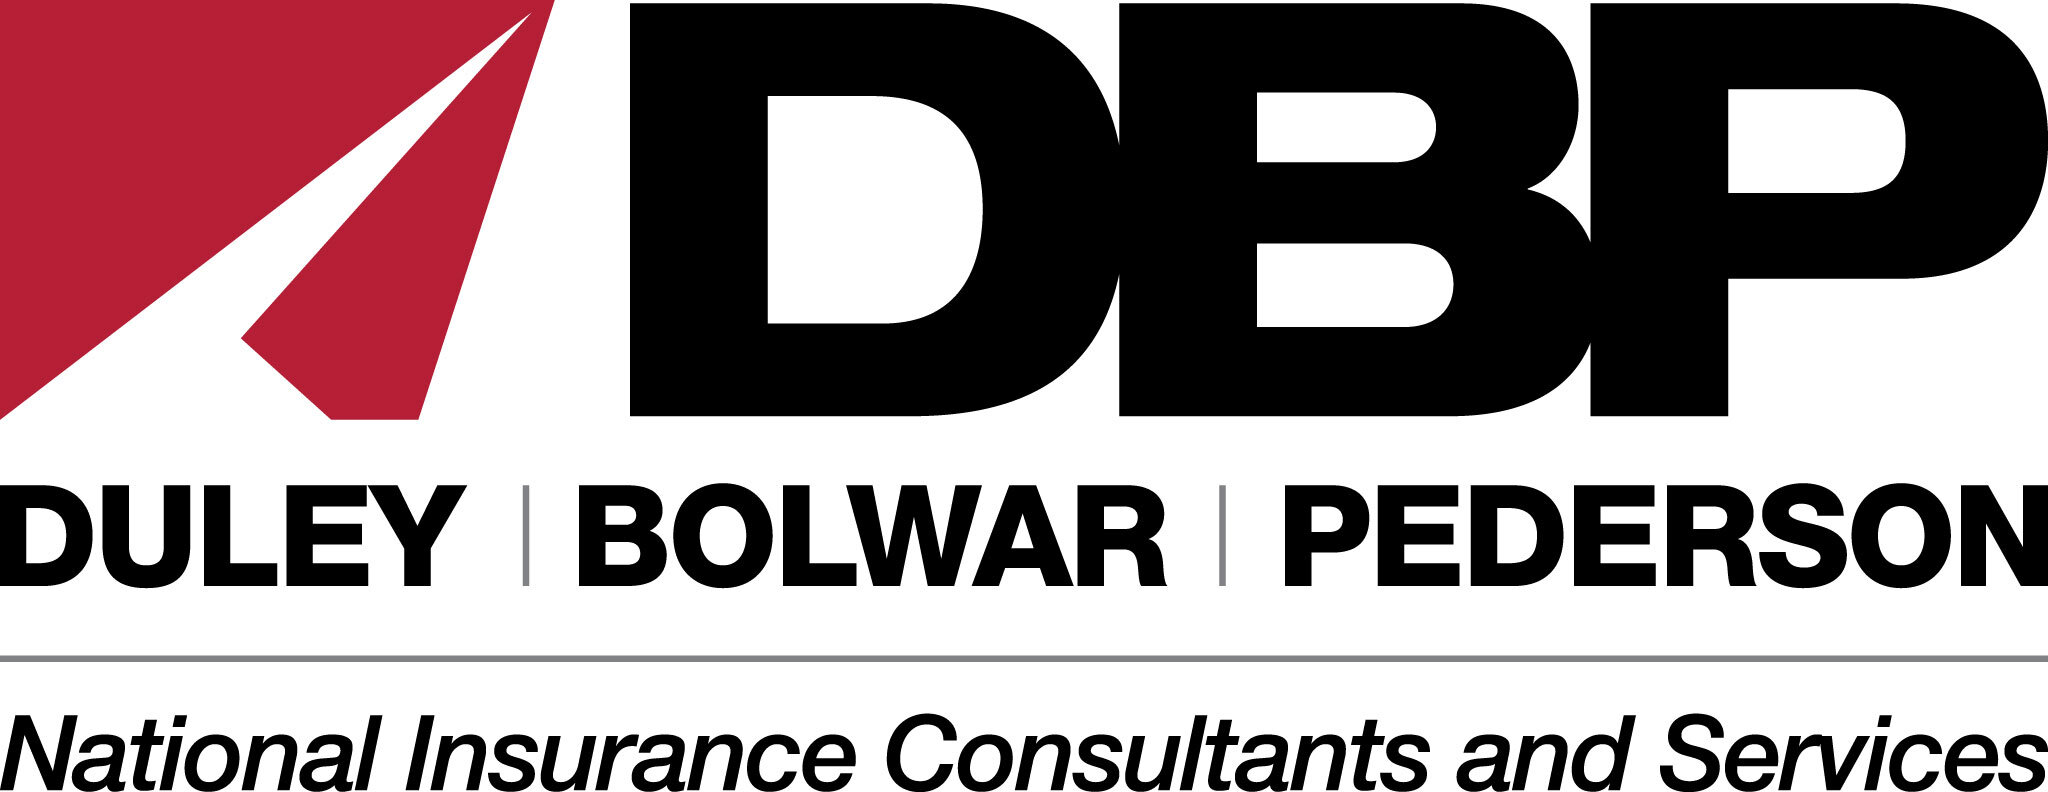 Duley-Bolwar-Peterson-Logo-with-Tagline.jpg